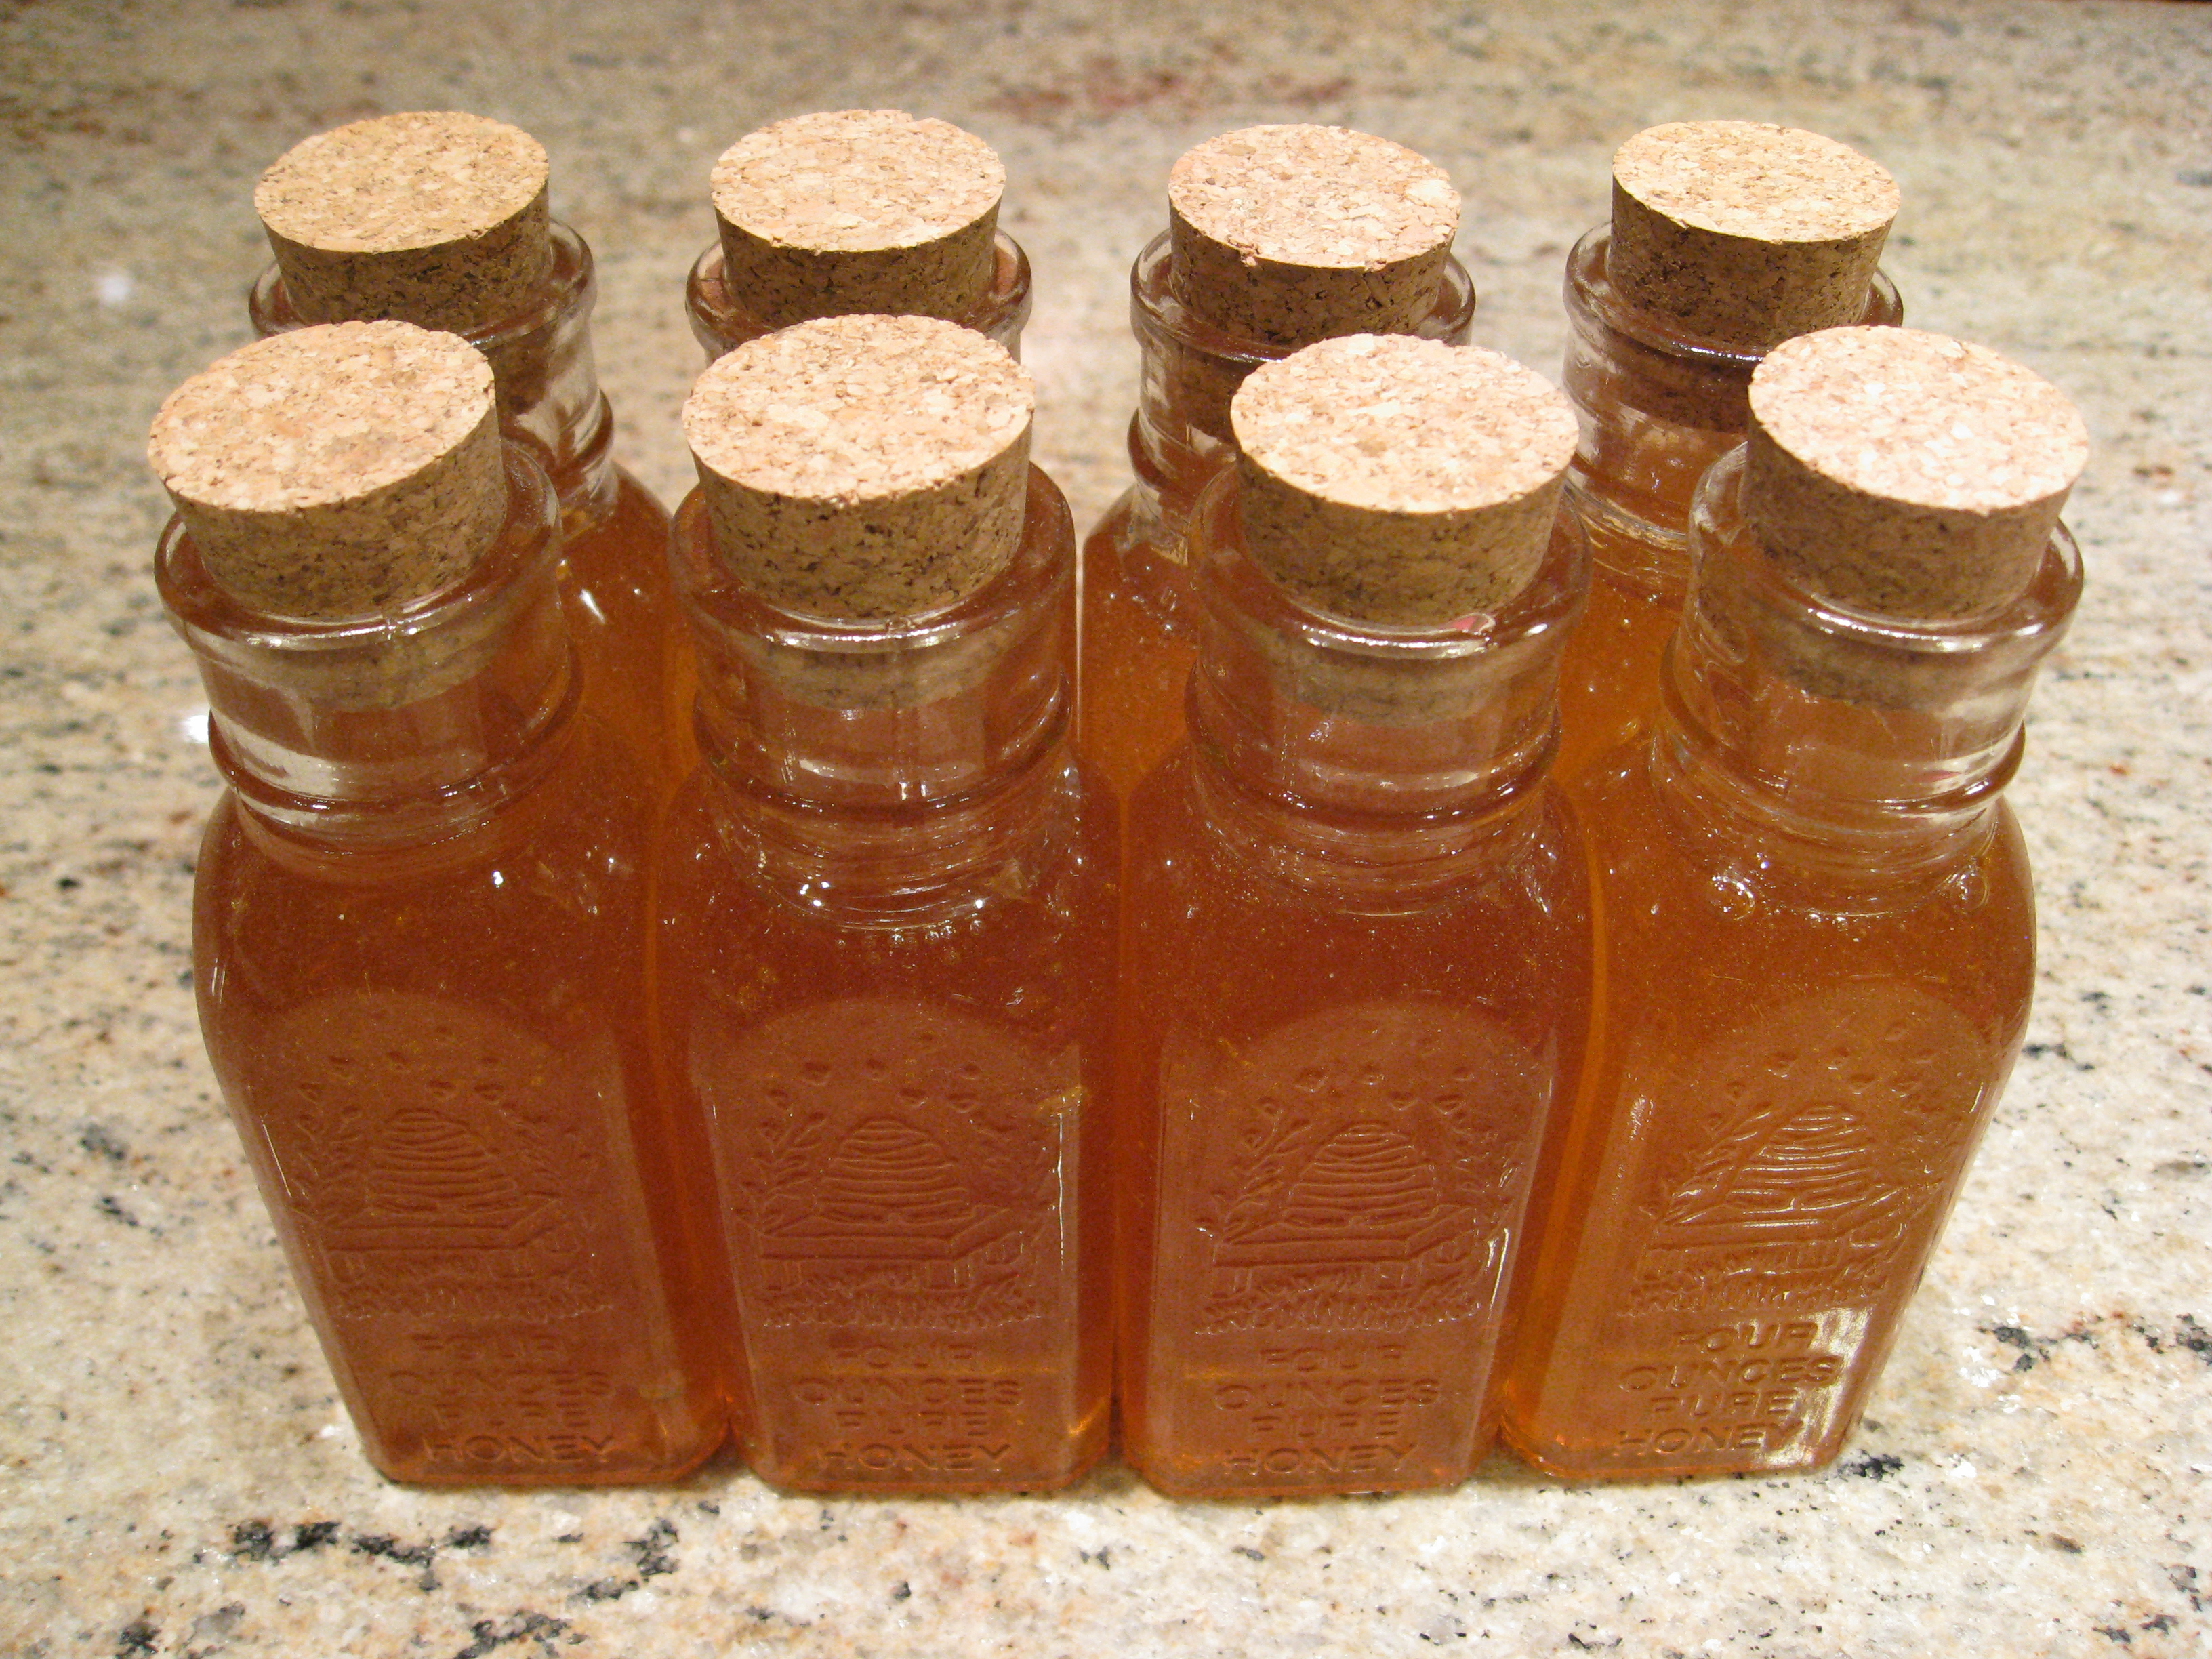 Freshly harvested honey in gift jars